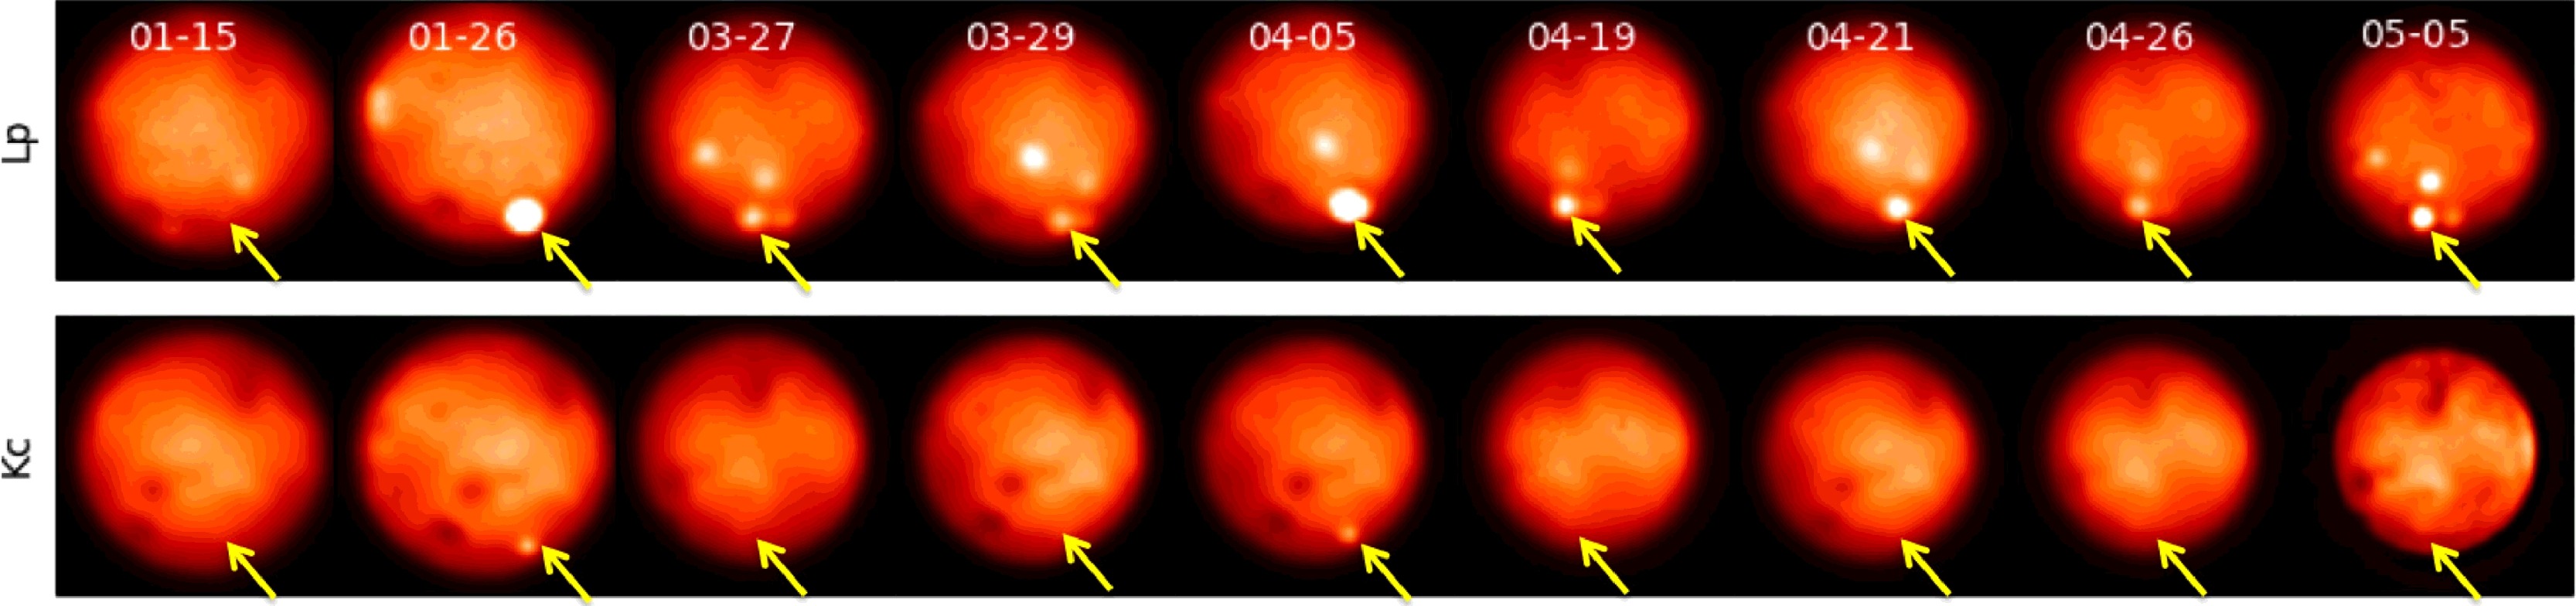 تصویر ۲: تصاویر زمانی فوران گودال کوردالاگون پاترا که با پیکان نشان داده شده است.